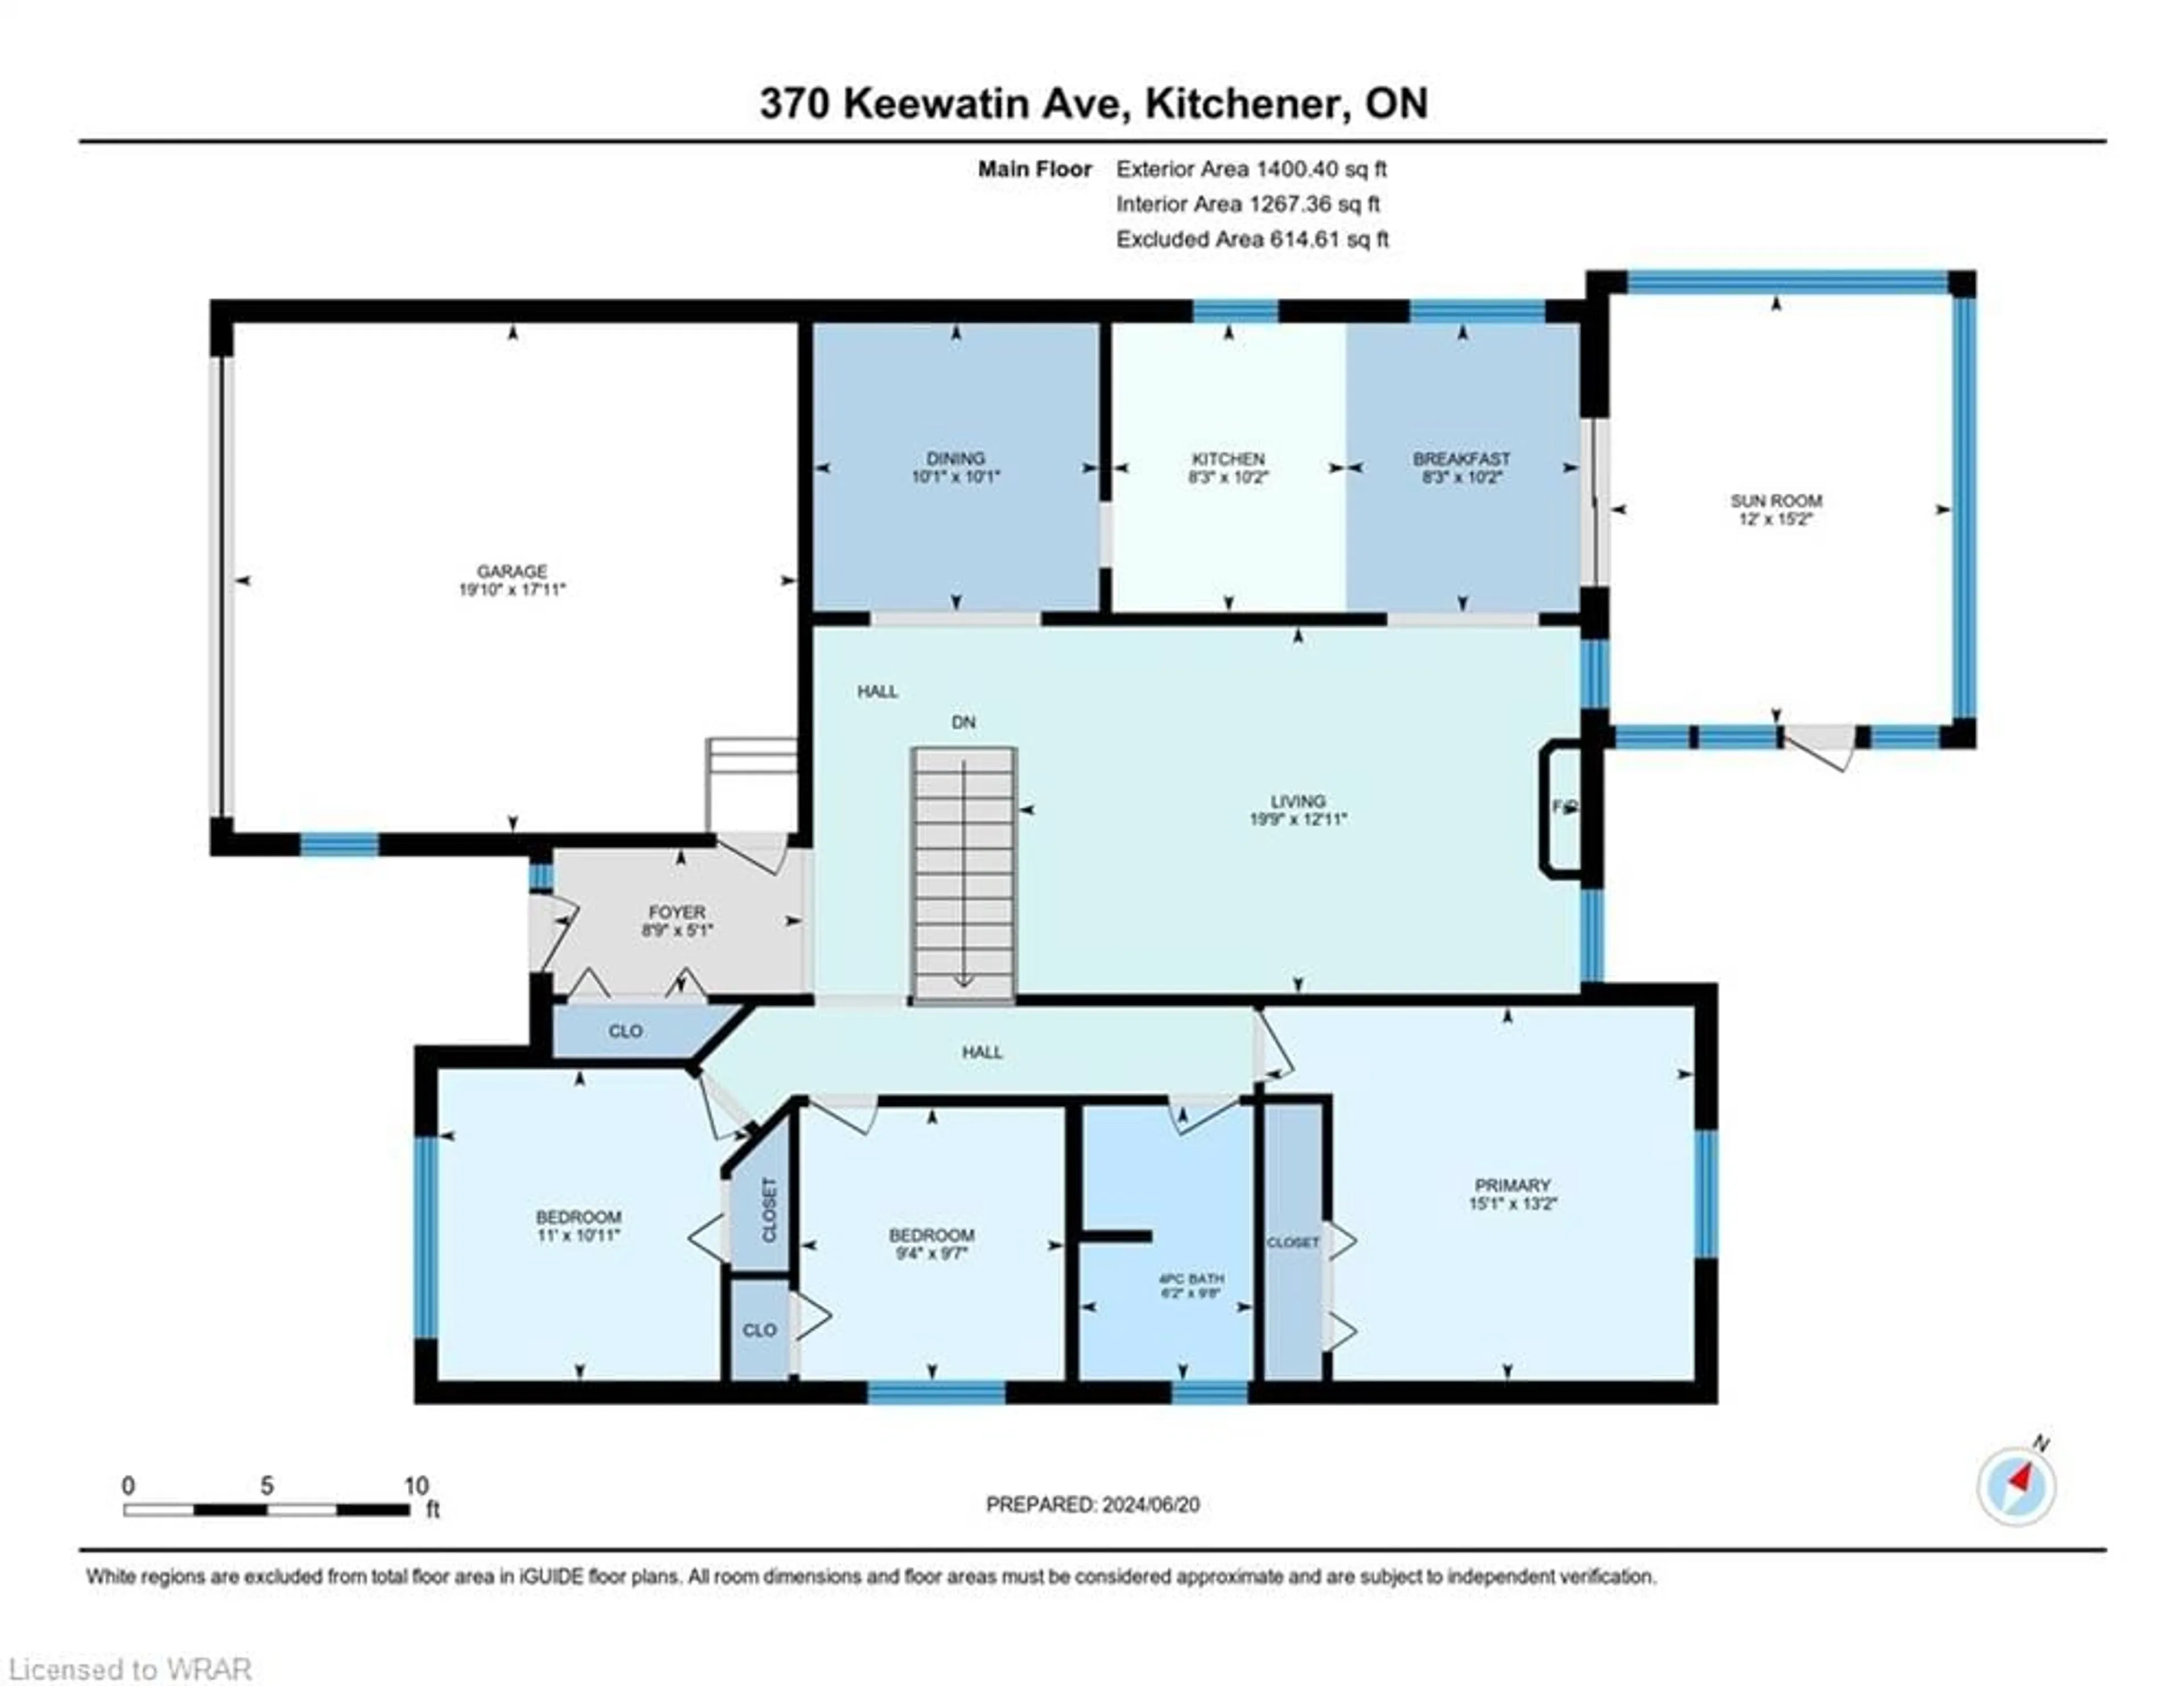 Floor plan for 370 Keewatin Ave, Kitchener Ontario N2B 3V3